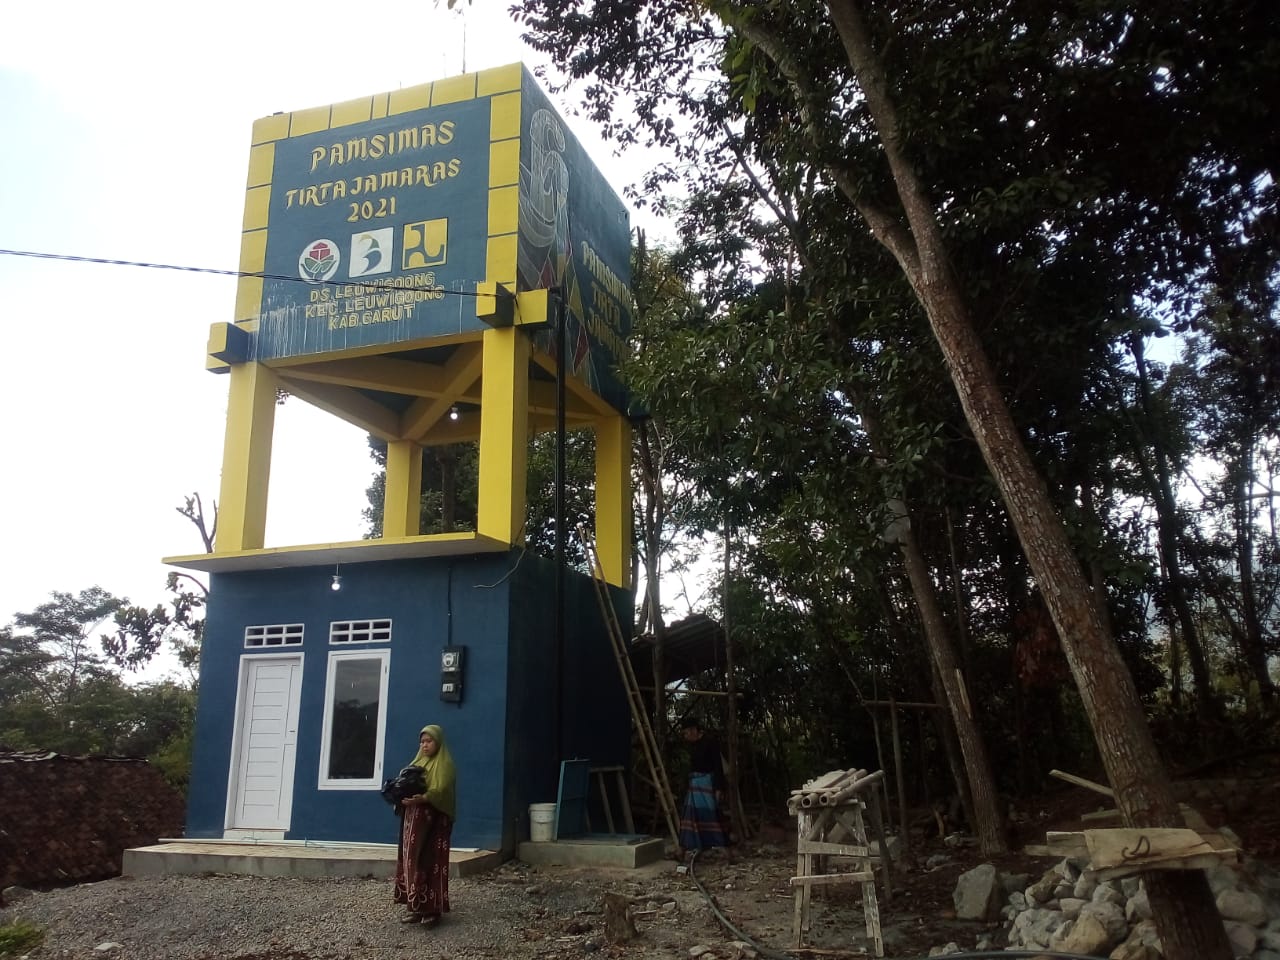 PAMSIMAS Tirta Jamaras bisa memenuhi kebutuhan air bersih warga Kampung Cikenal dan Cijeler Desa Leuwigoong.(foto pepen apendi)